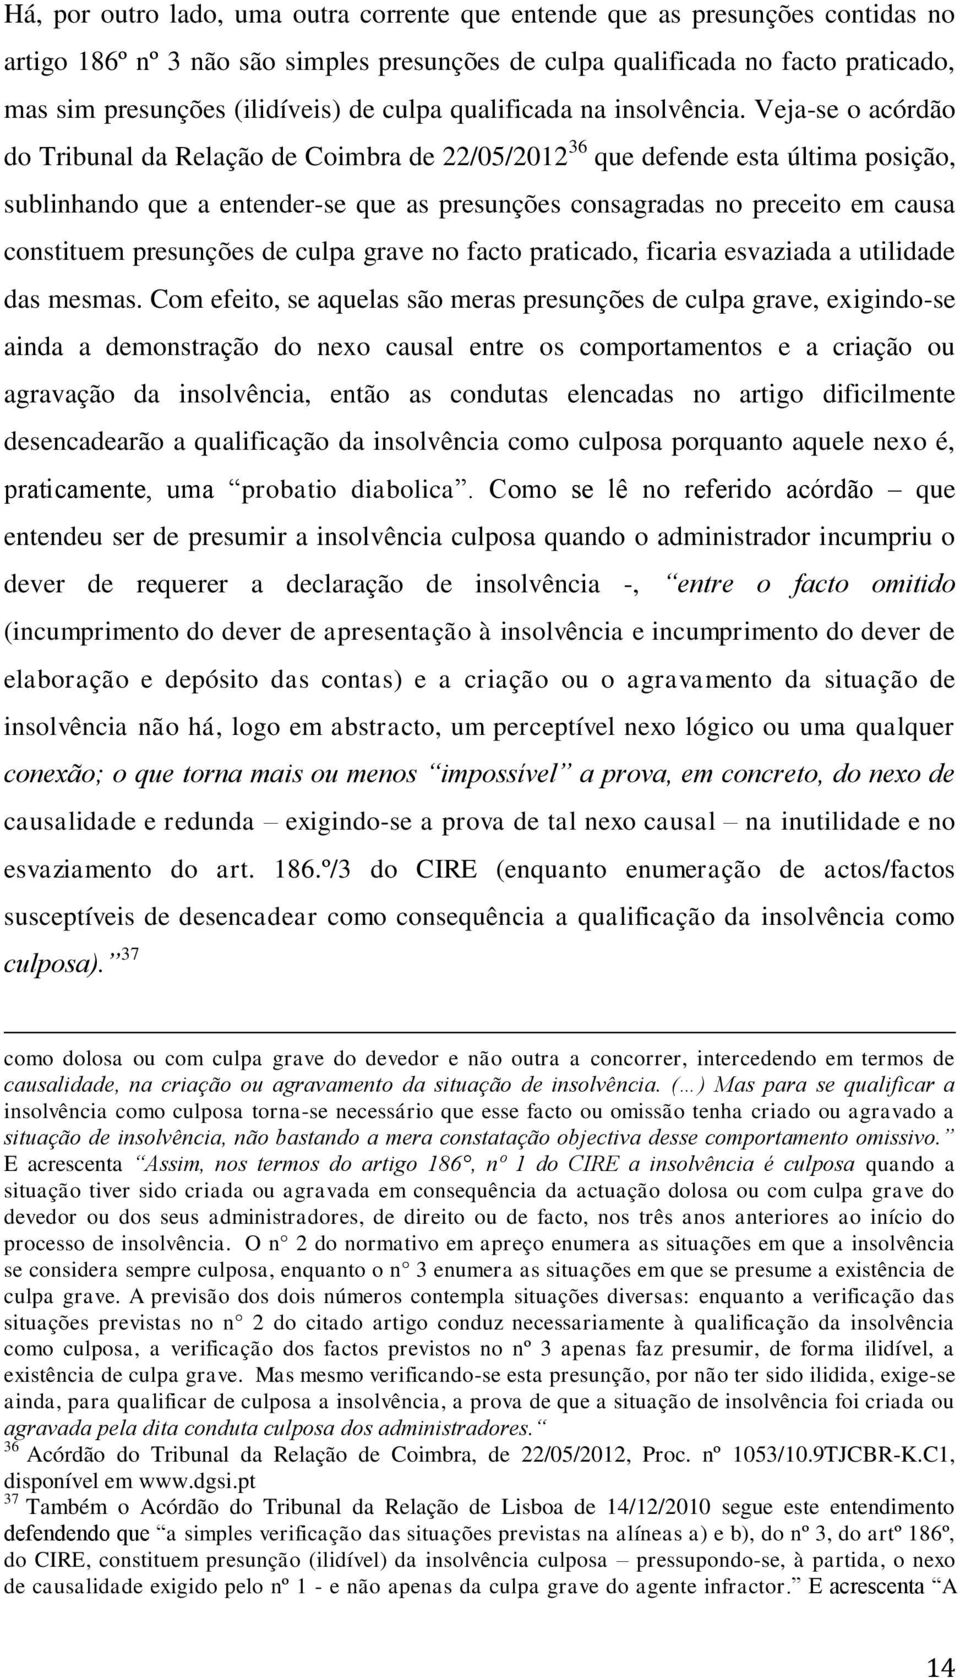 Veja-se o acórdão do Tribunal da Relação de Coimbra de 22/05/2012 36 que defende esta última posição, sublinhando que a entender-se que as presunções consagradas no preceito em causa constituem